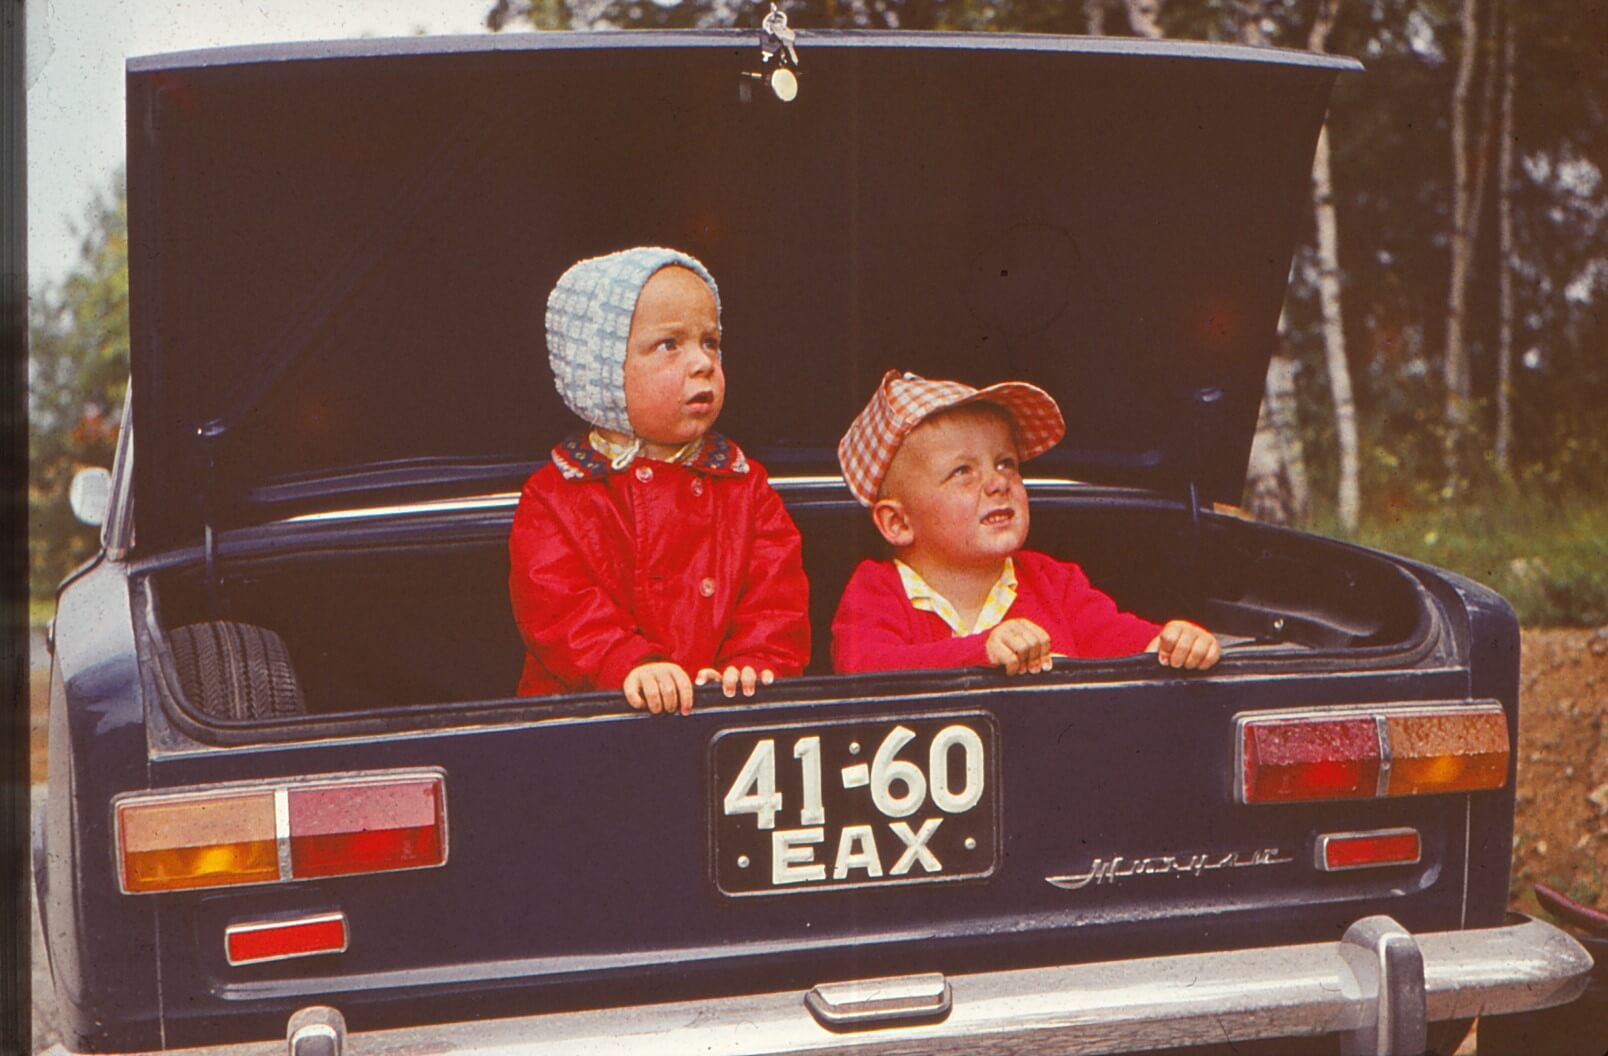 Koos läbitud elud III  „VAZ 2101 (41-60 EAX) oli Pärnu vanaisa auto, Eestist uuena ostetud aastal 1974. Ühelgi talvel ei sõitnud, seisis garaažis pukkide peal. Pildil mina 1-aastase ja vend 4-aastasena.“  (Foto ja lugu: Siim)